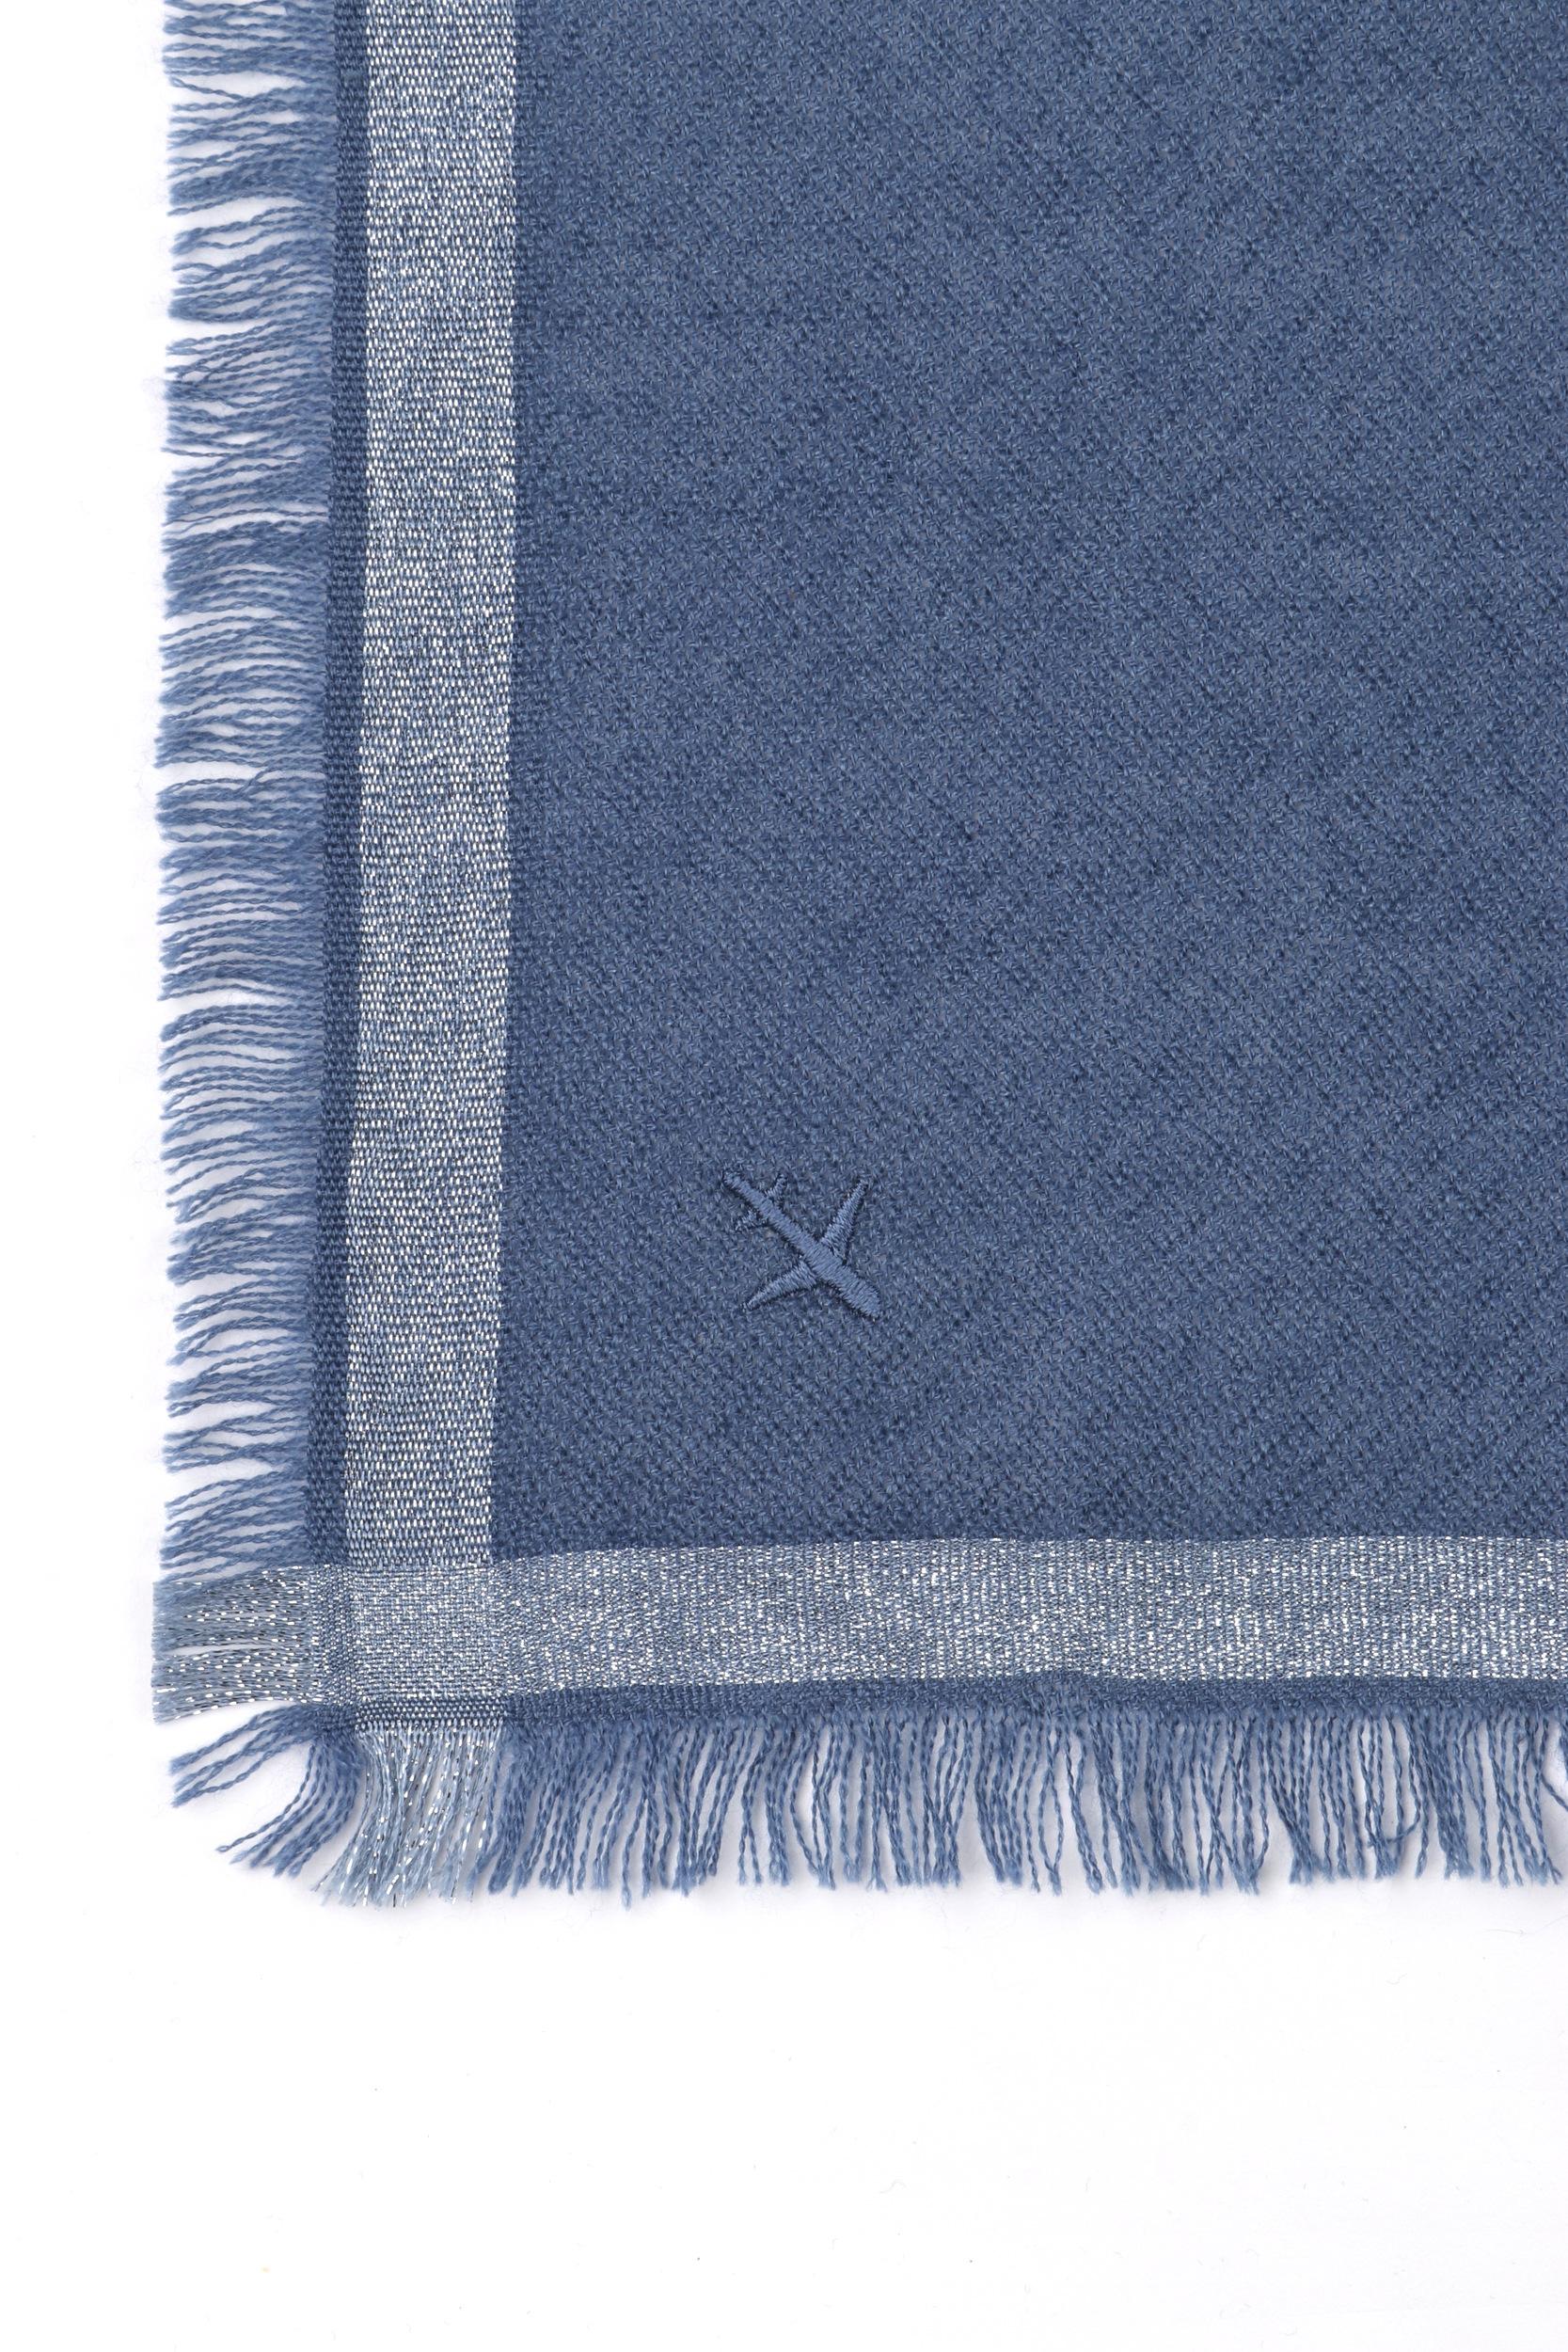 LORO PIANA “Quadrata Carre” Blue Silver Silk Cashmere Fringe Knit Travel Scarf In Good Condition In Thiensville, WI